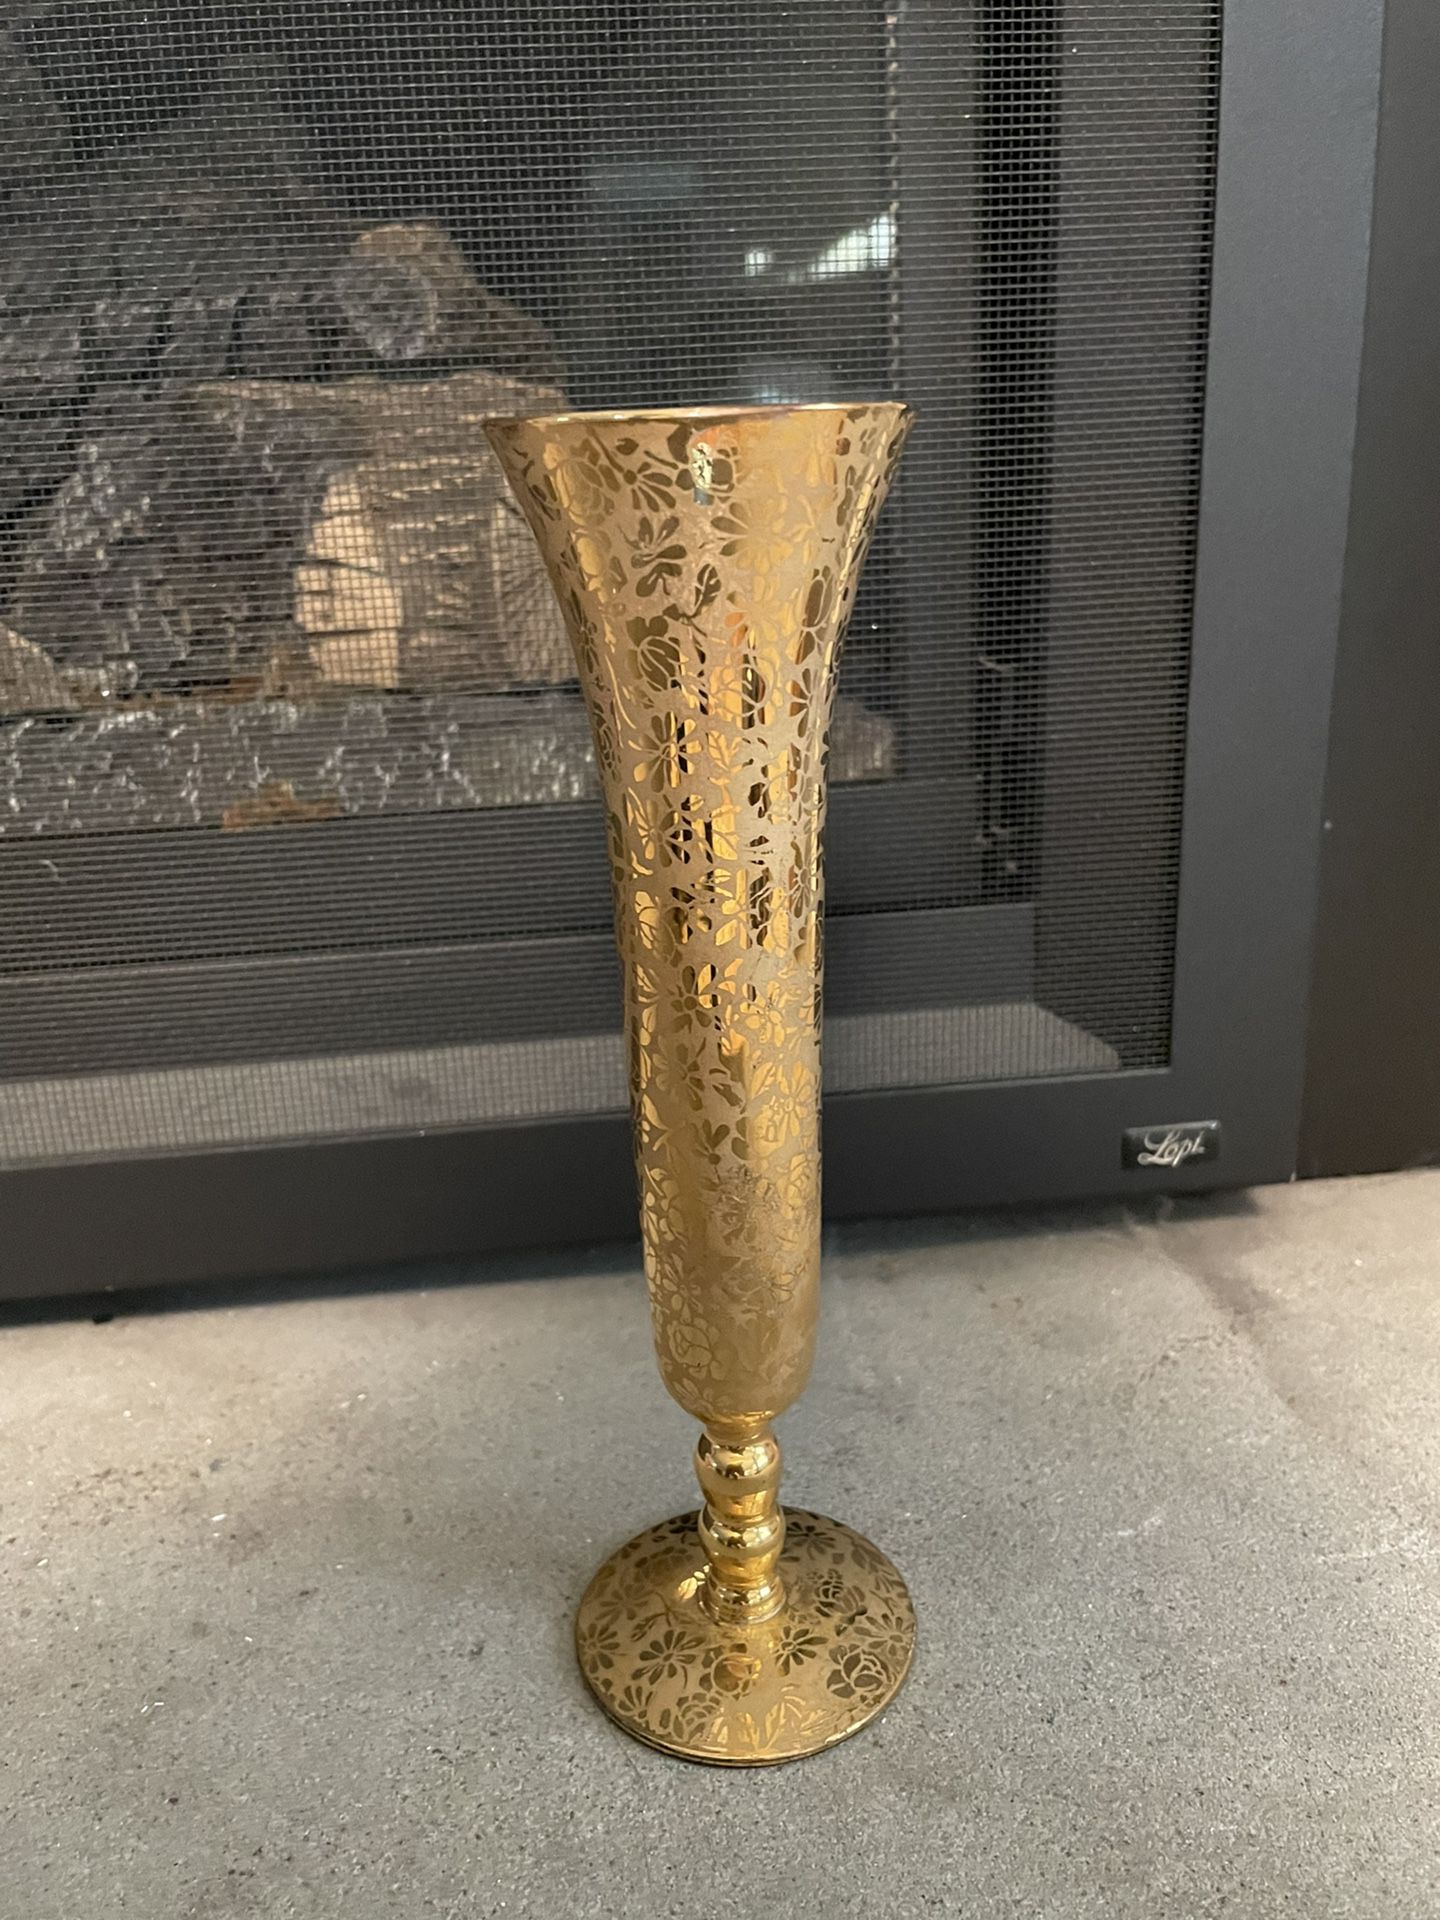  Ransgil 22k Gold Vase, Crystal, Floral Pattern, 1940's-1950's, Vintage, Elegant, Collectable